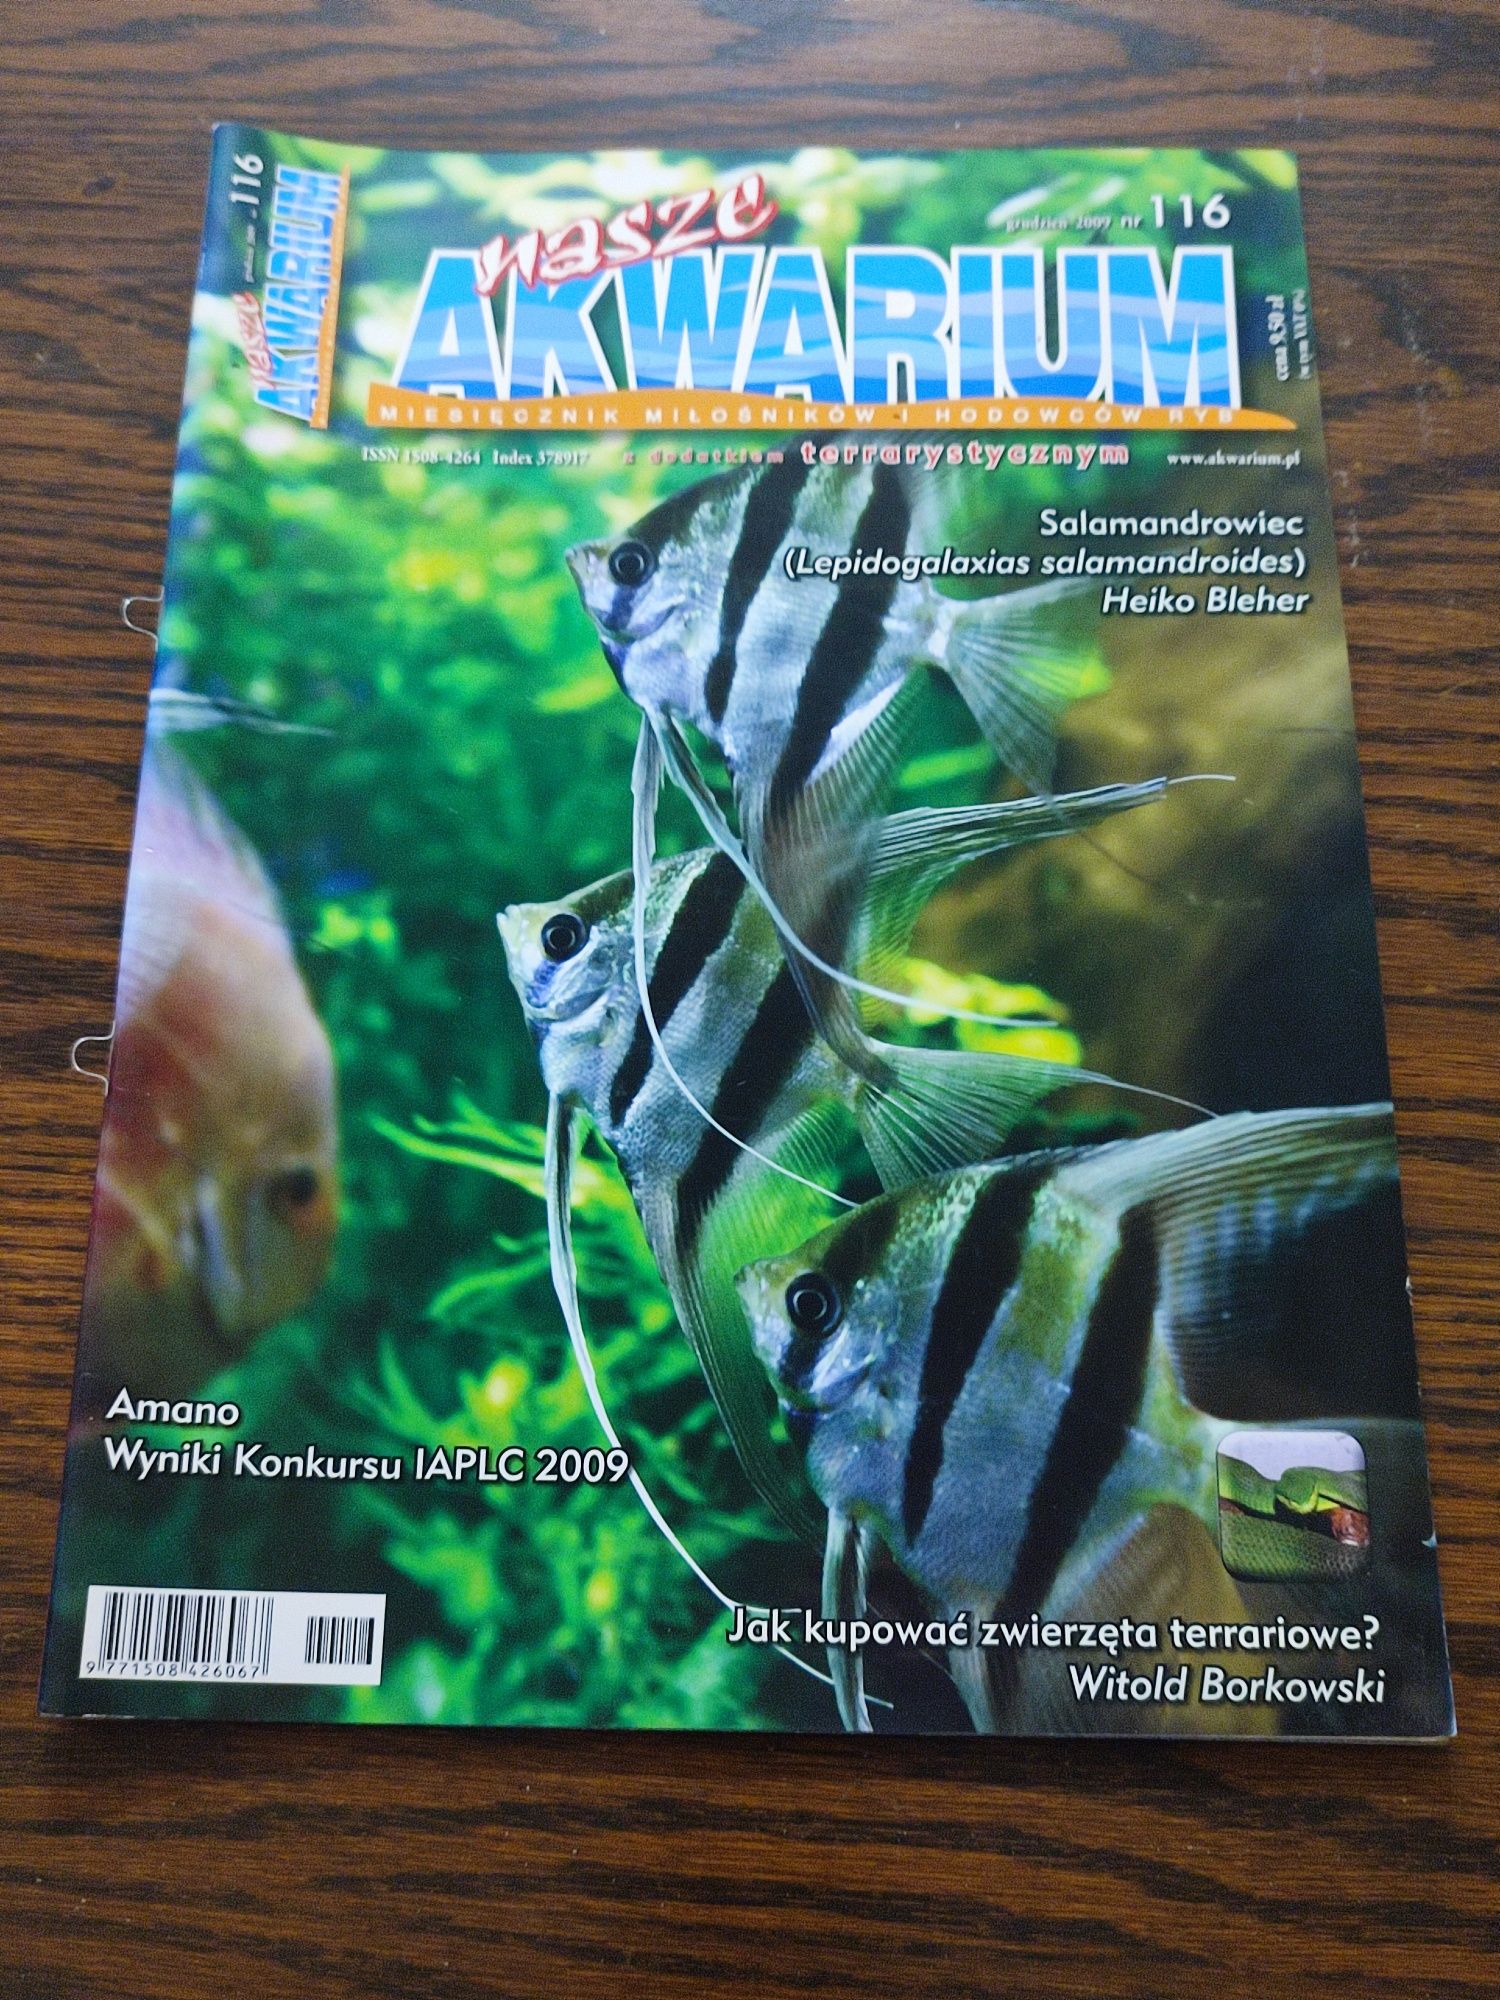 Nasze akwarium magazyn akwarium czasopismo akwarystyczne nr 116 z 2009